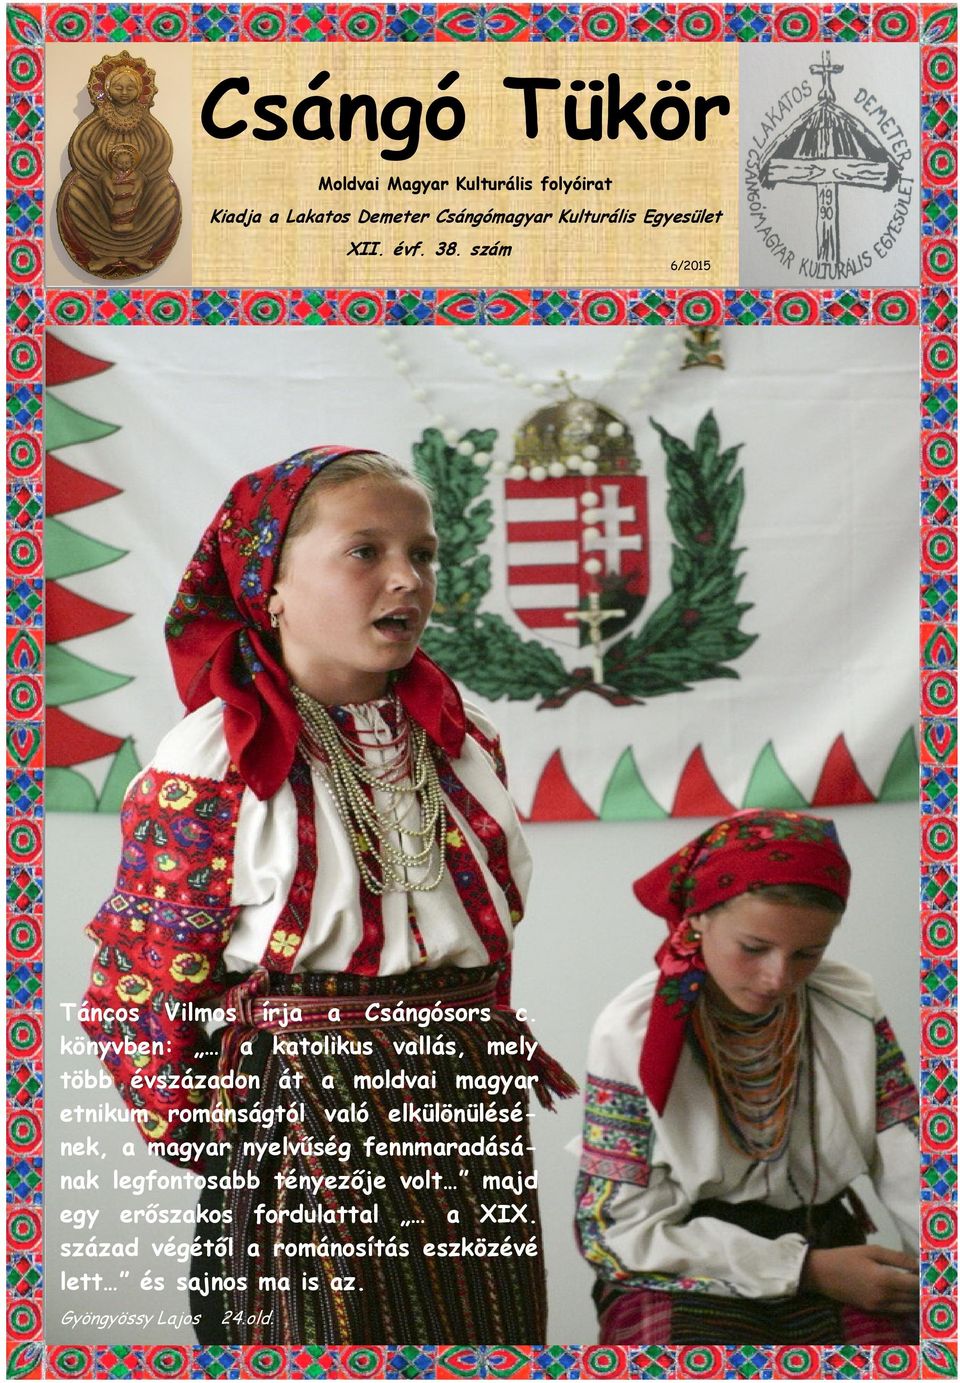 könyvben: a katolikus vallás, mely több évszázadon át a moldvai magyar etnikum románságtól való elkülönülésének, a